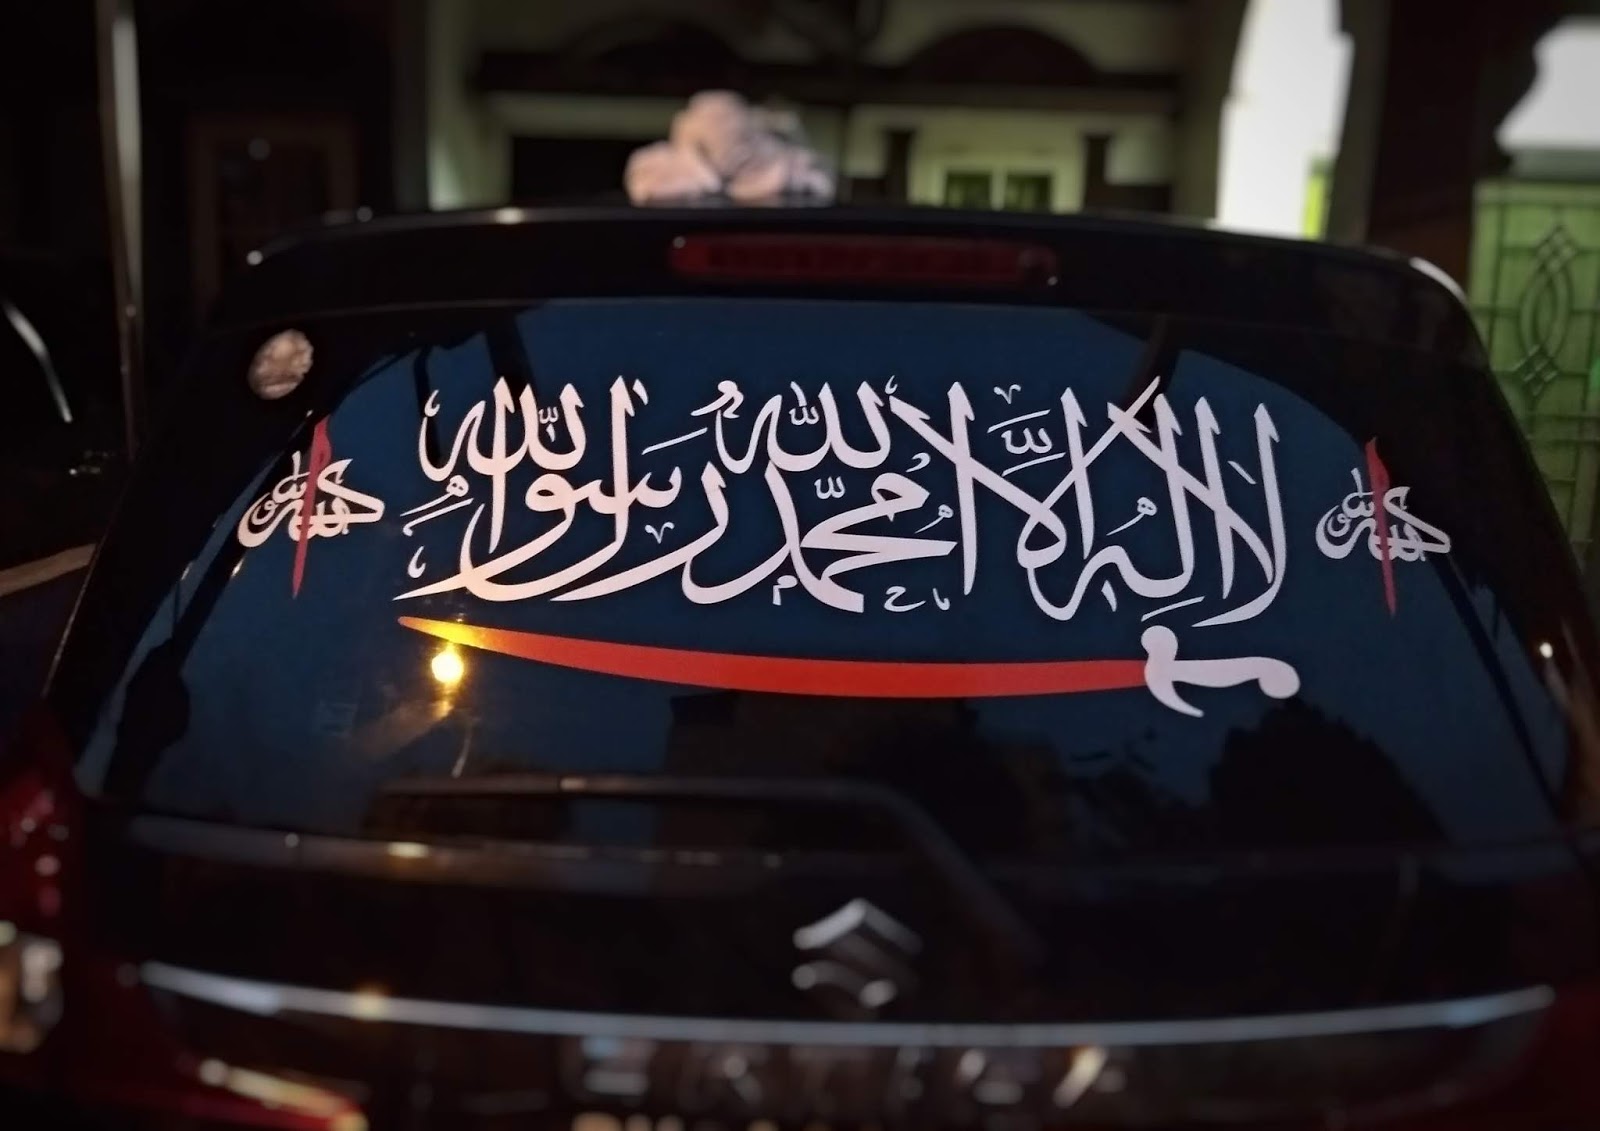 Jual Sticker  Islam Kalimat Tauhid untuk Kaca Mobil  di 